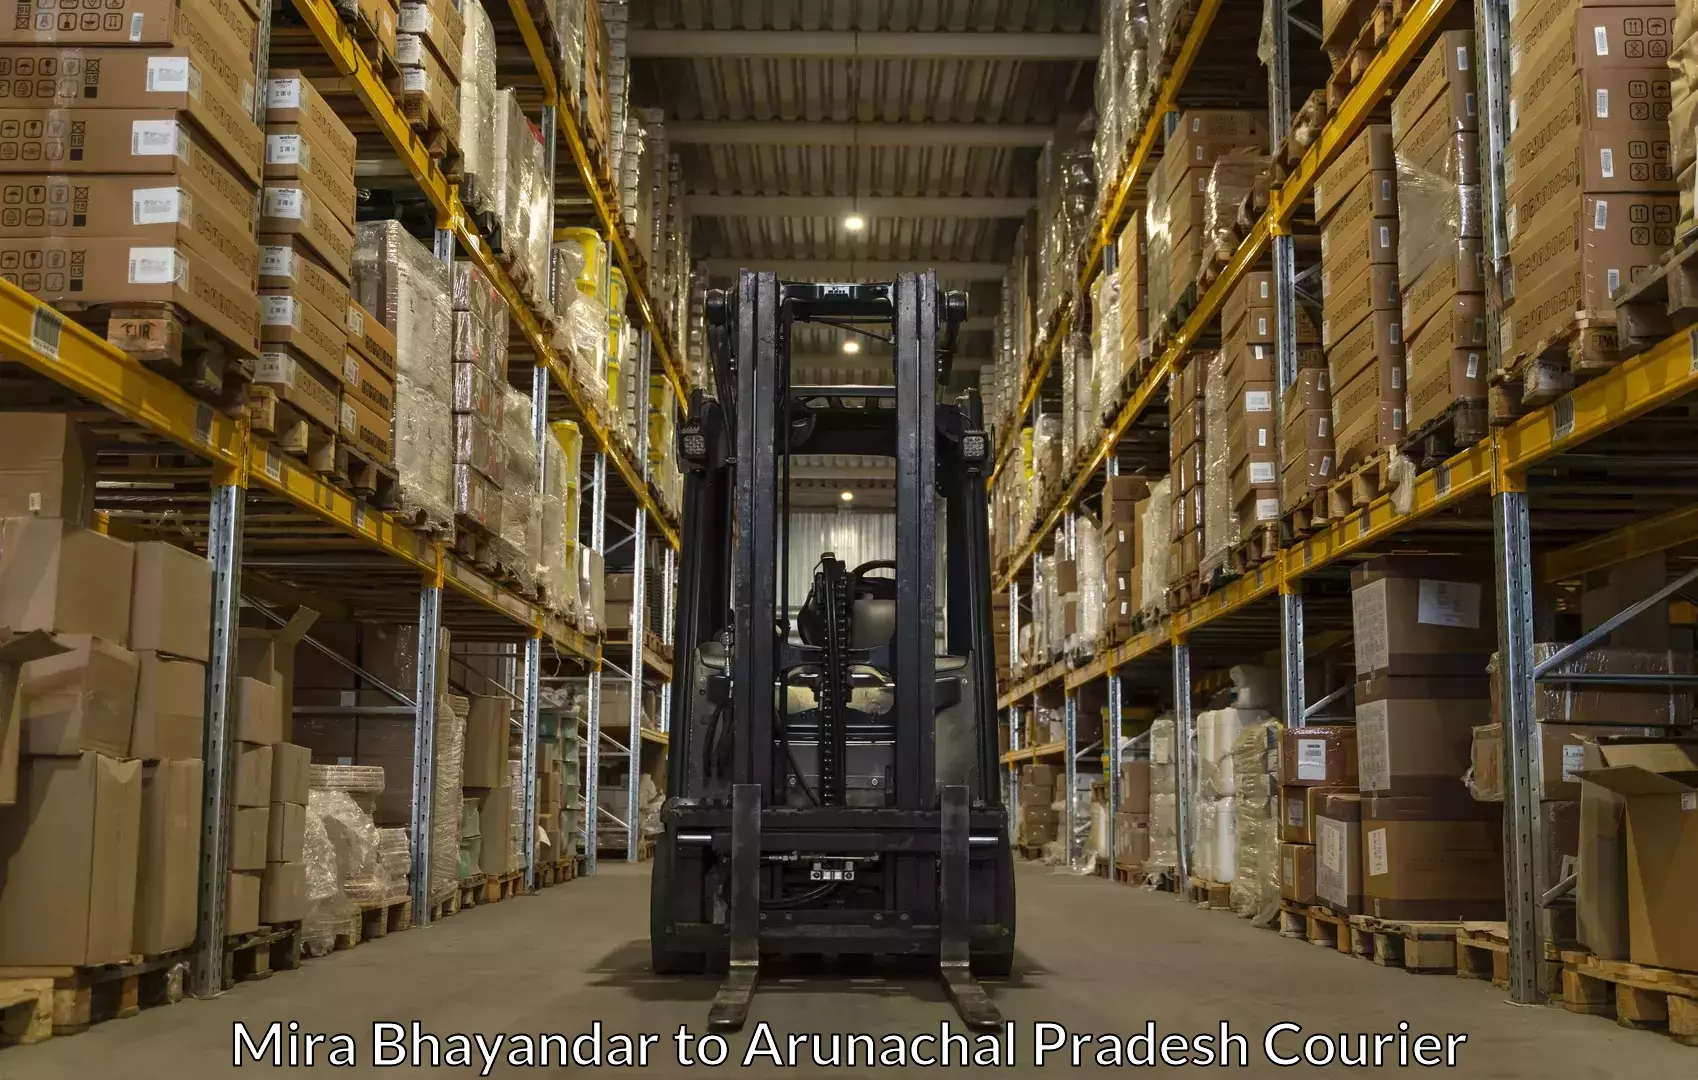 Baggage shipping experts in Mira Bhayandar to Arunachal Pradesh